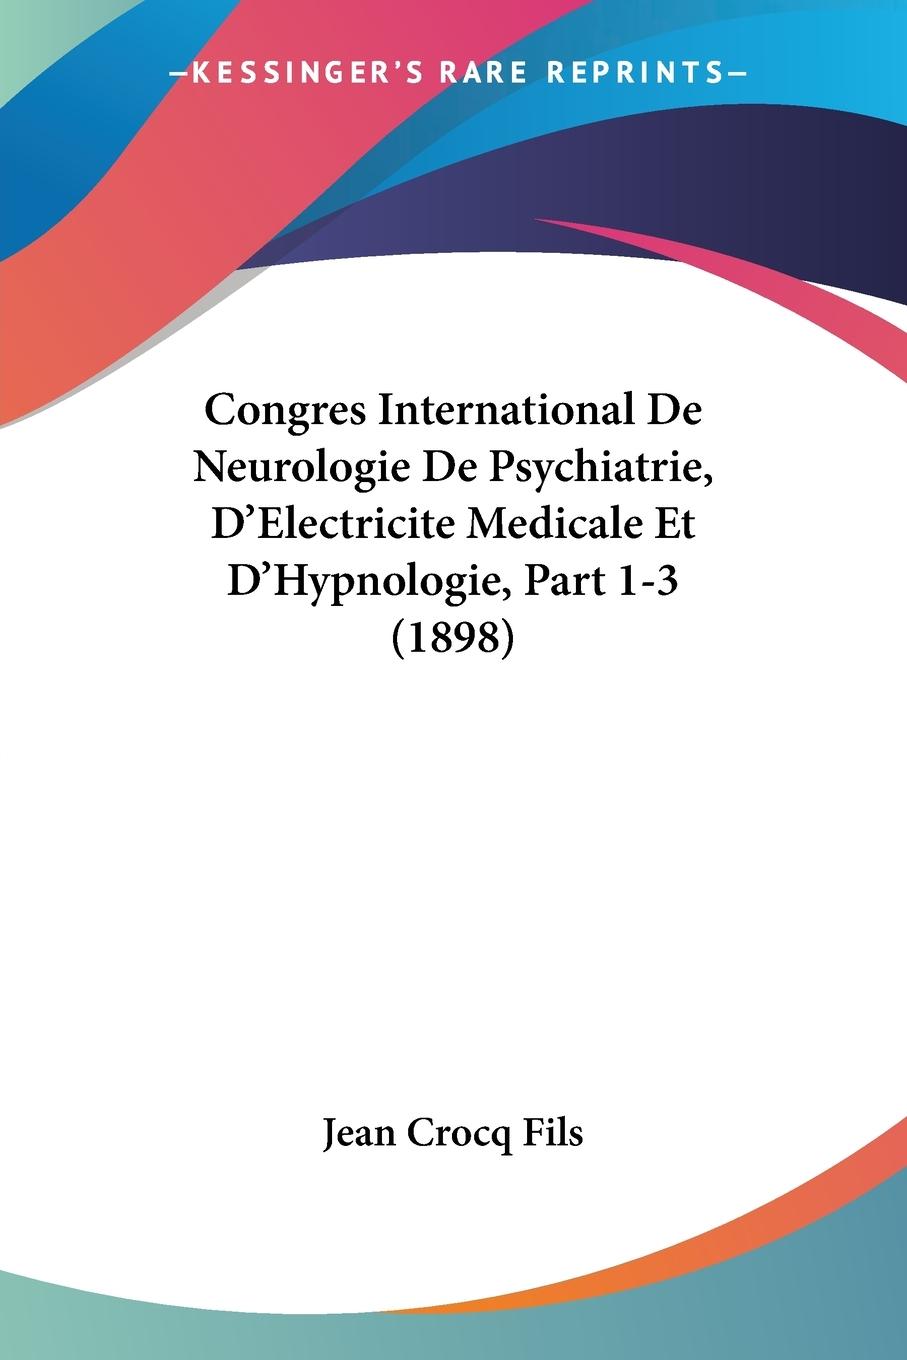 Congres International De Neurologie De Psychiatrie, D Electricite Medicale Et D Hypnologie, Part 1-3 (1898)